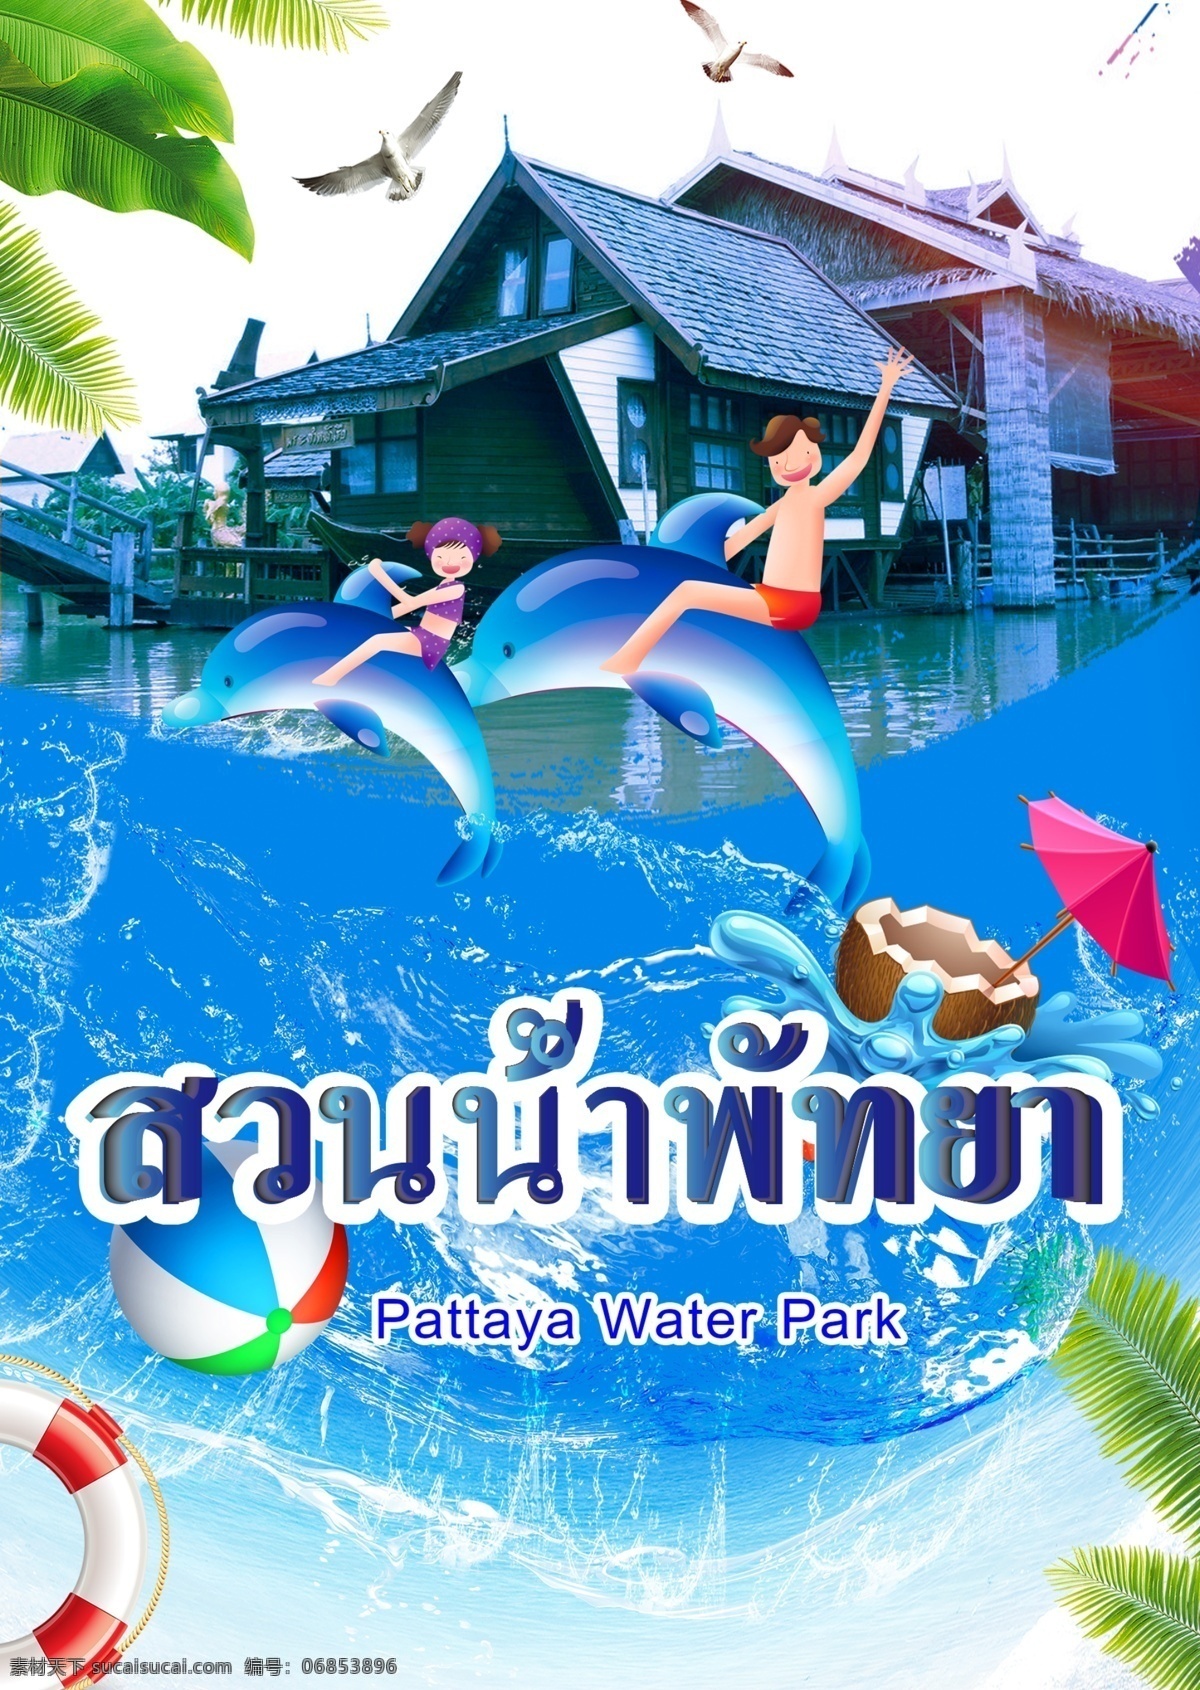 手绘 泰国 水上乐园 房屋 游泳圈 阳伞 椰子汁 游览 假期中 清凉爽口